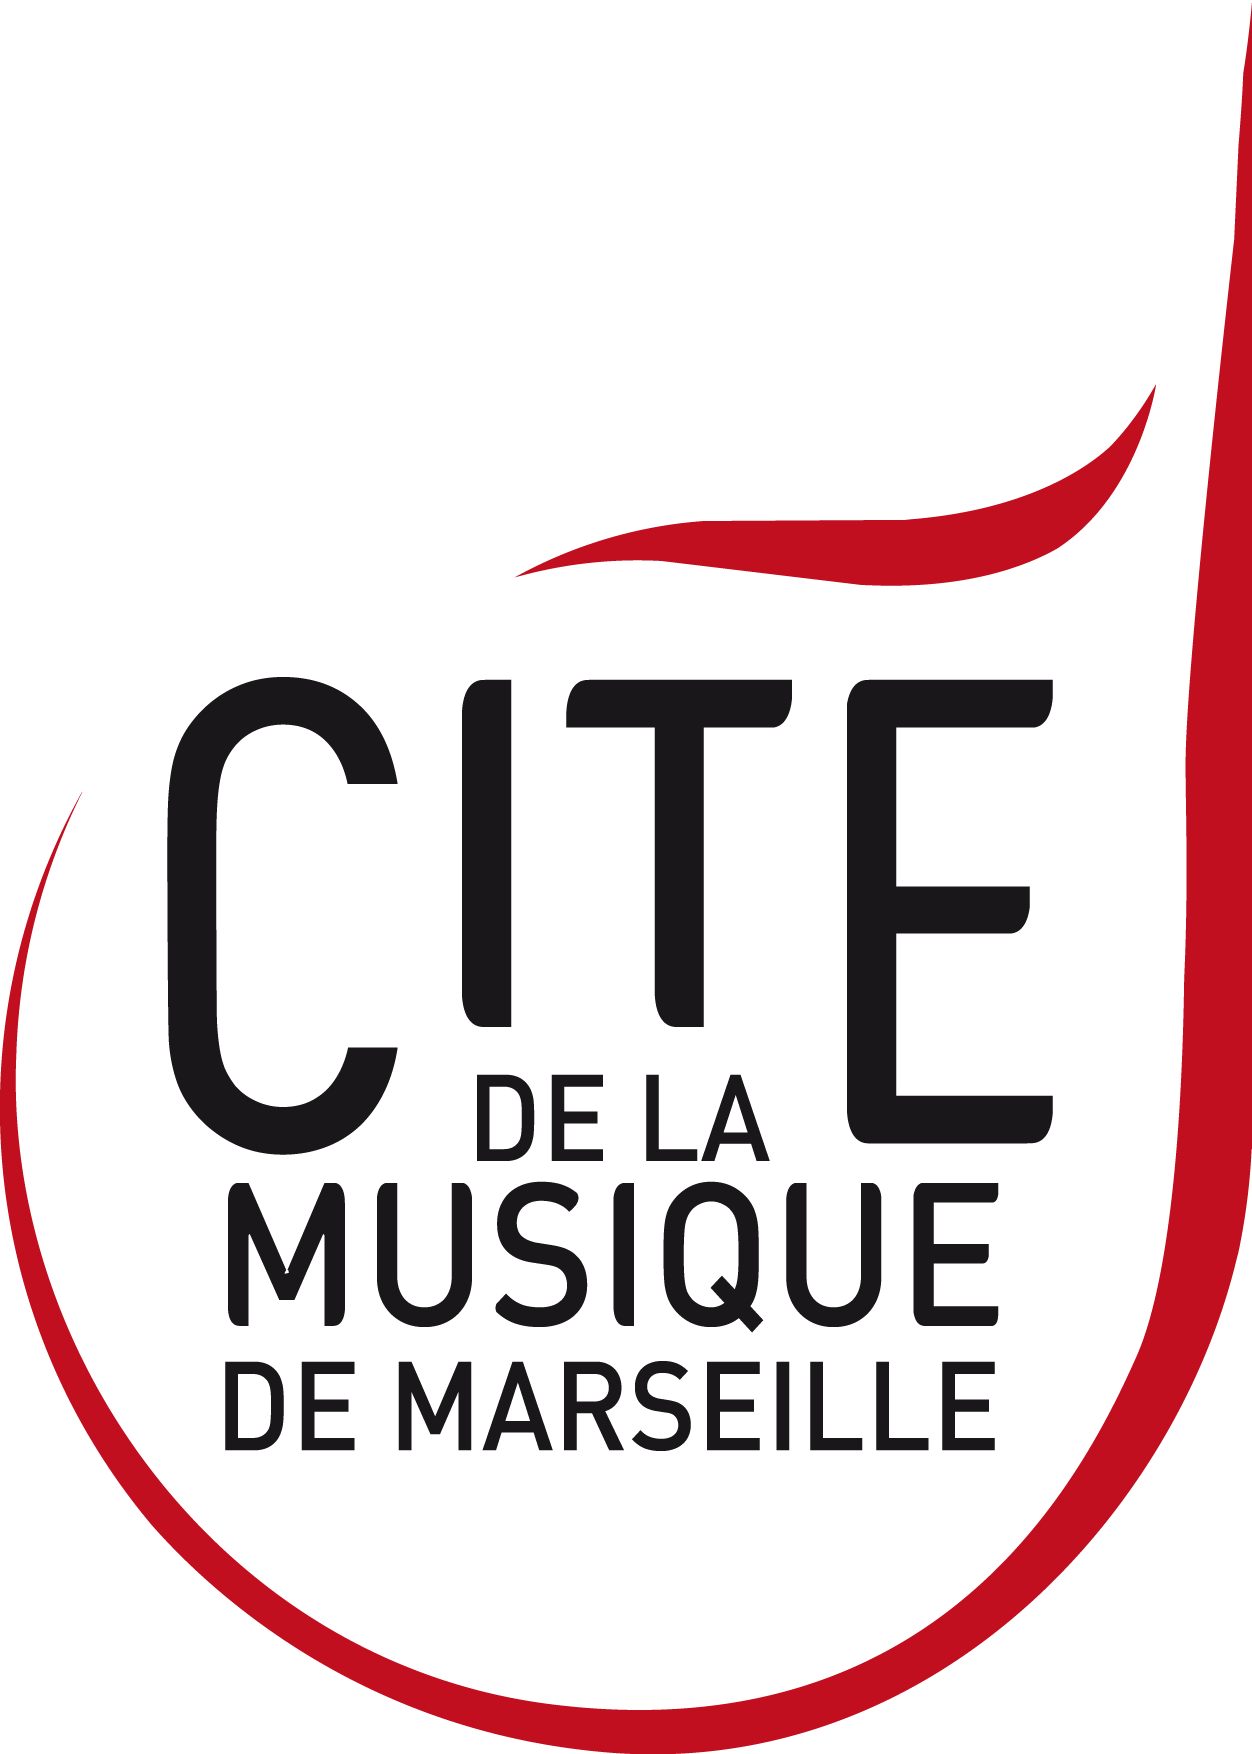 La guimbarde sicilienne - Cité de la Musique de Marseille